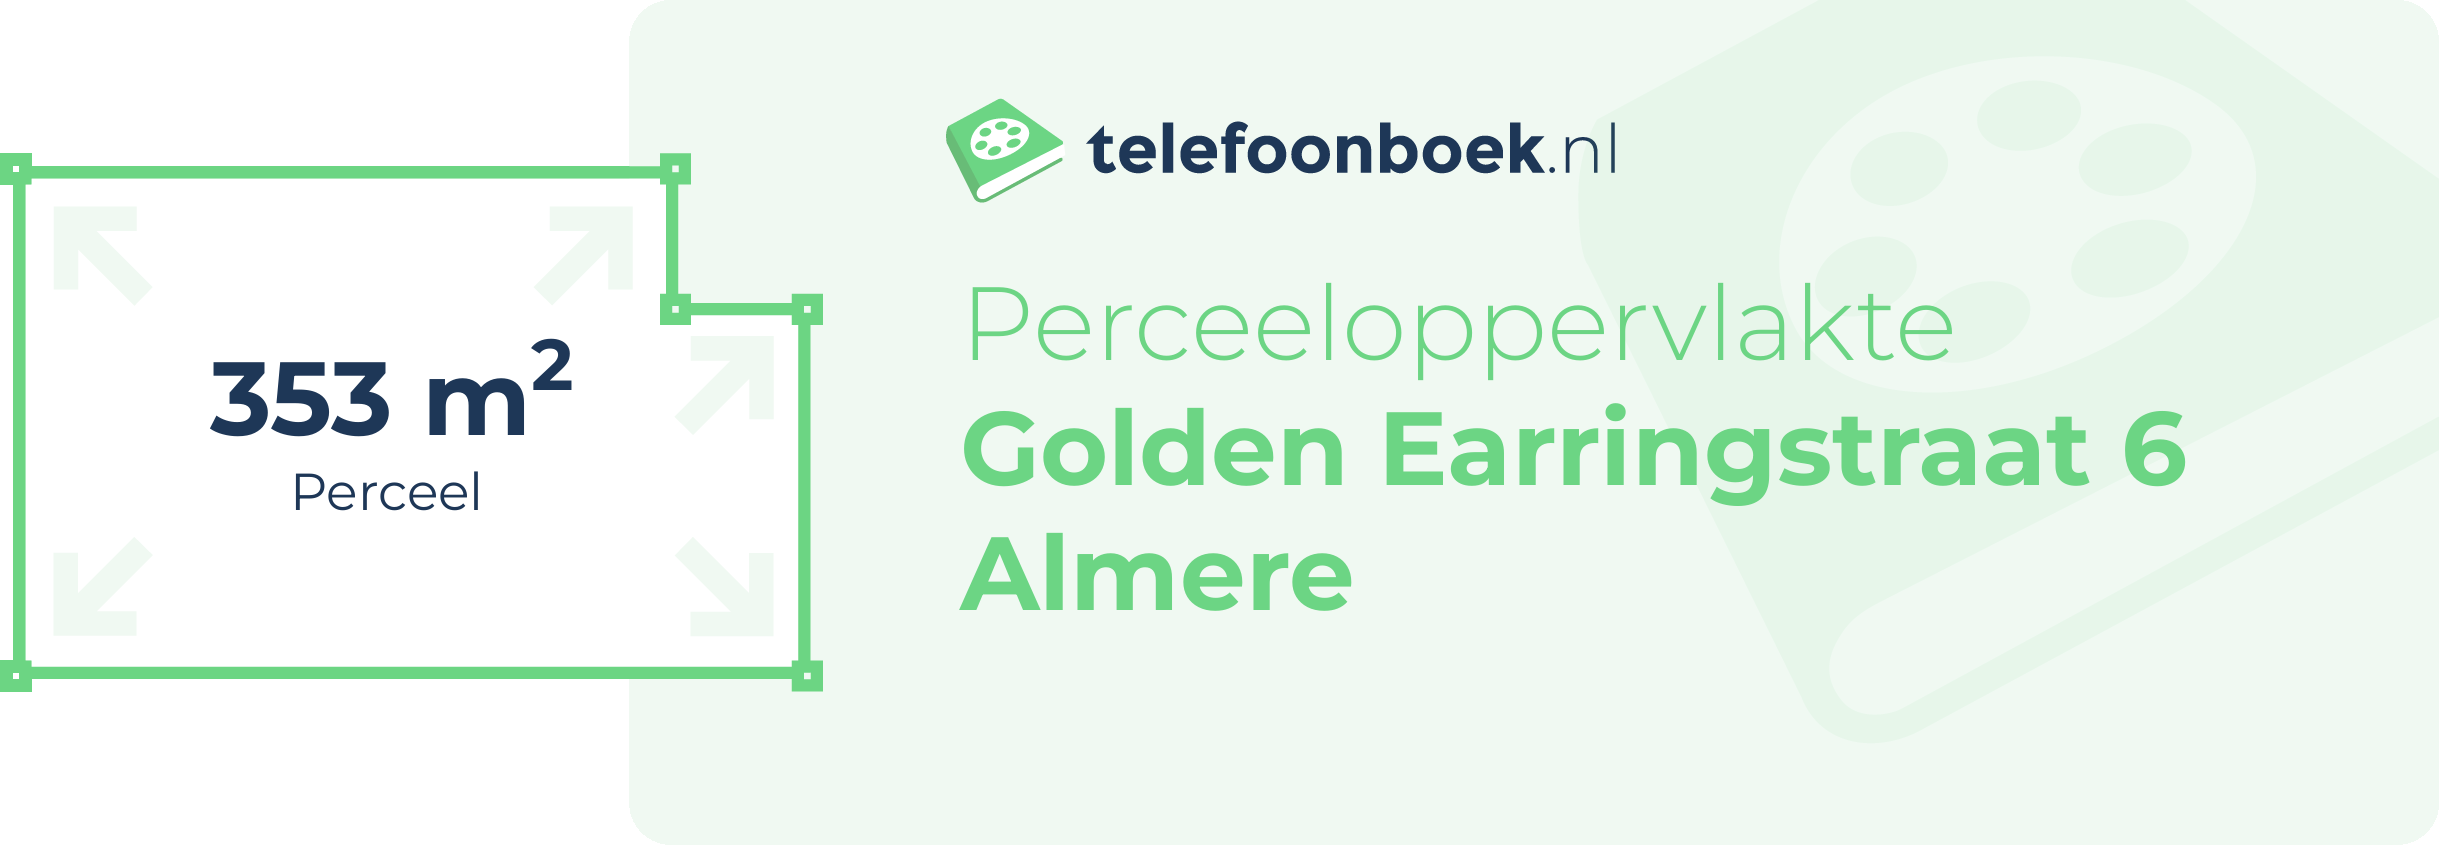 Perceeloppervlakte Golden Earringstraat 6 Almere